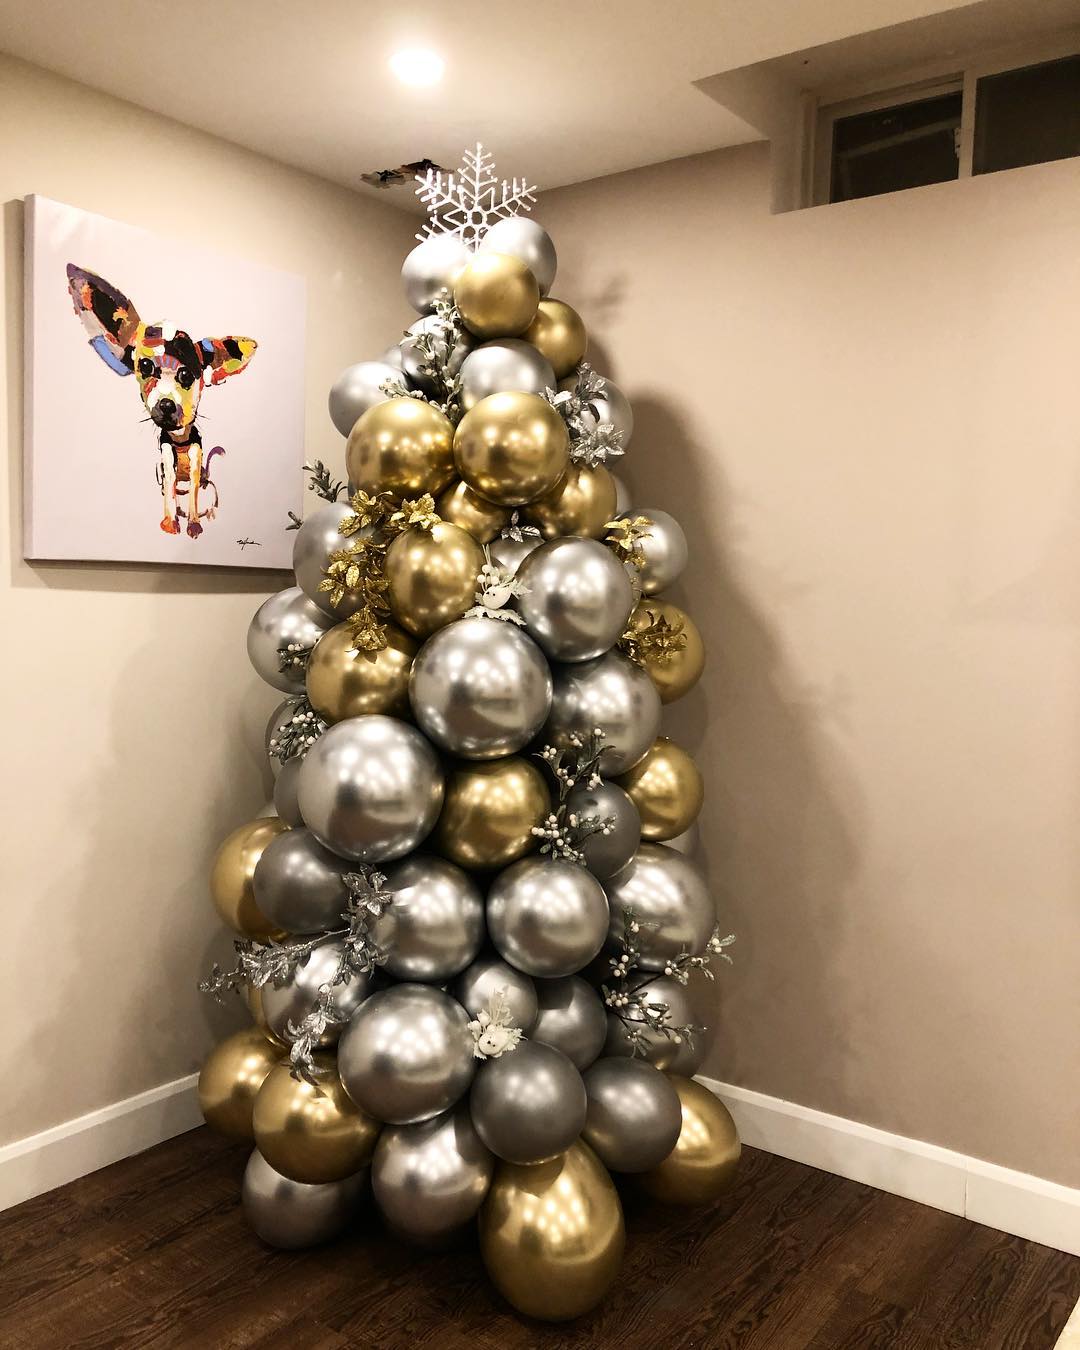 Árboles de navidad con globos - Decoración navideña con globos